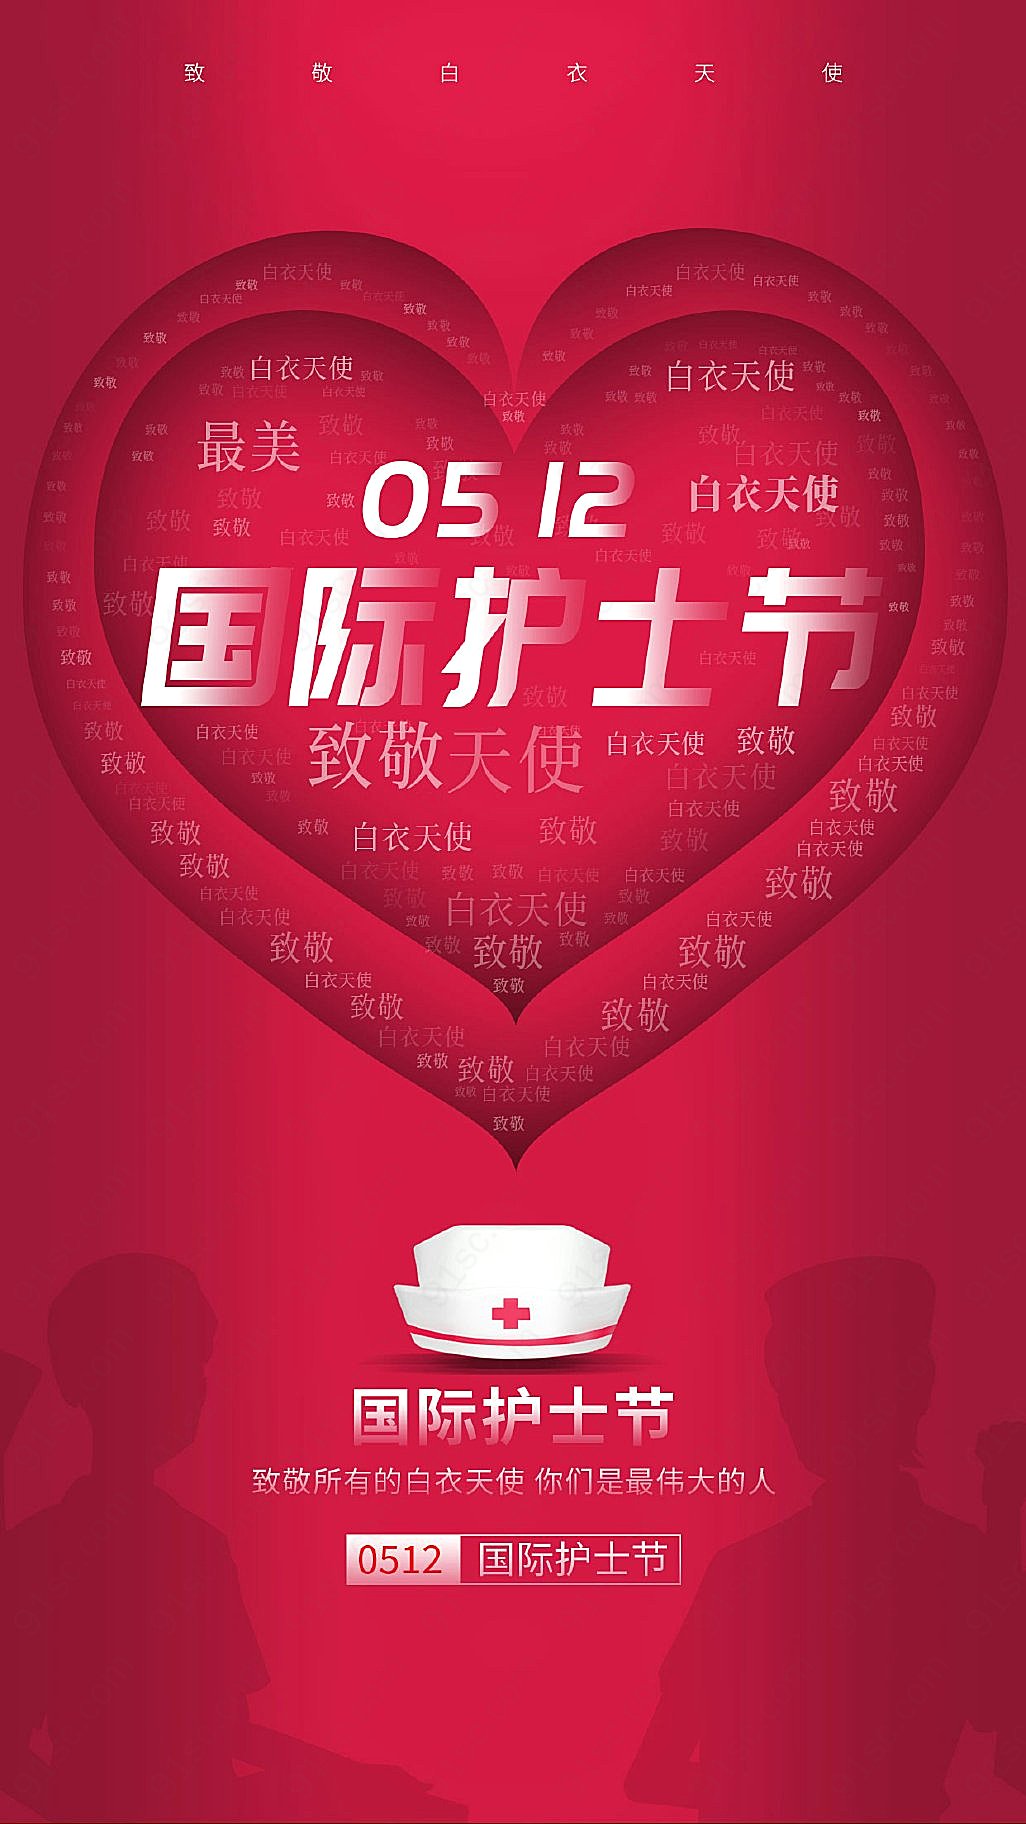 简约红心512国际护士节手机宣传海报节日设计平面广告下载